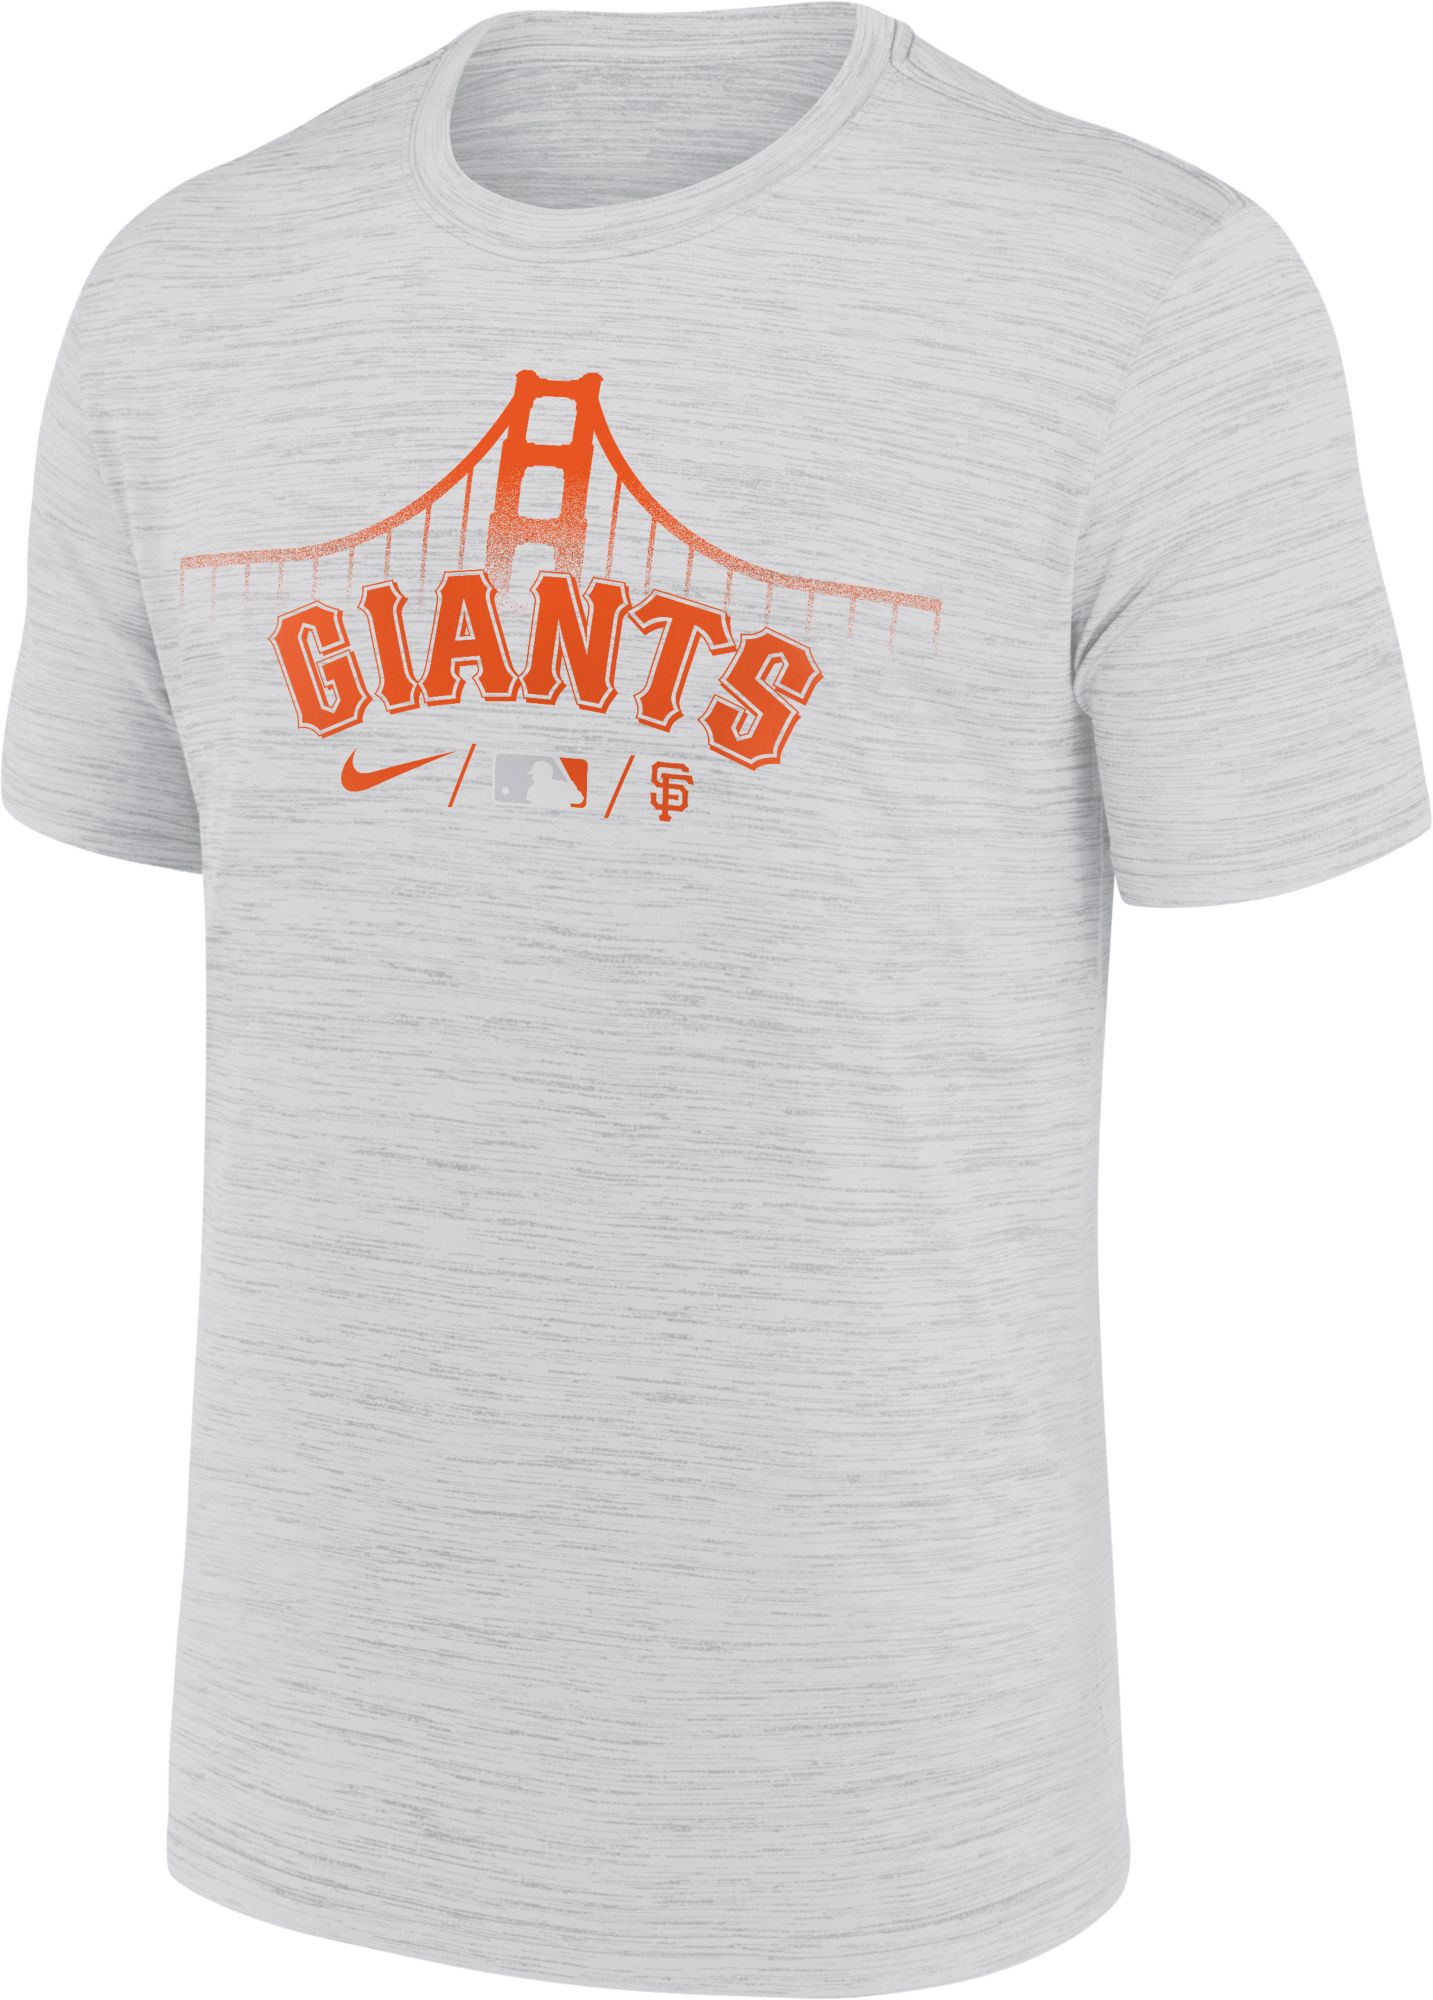 Shop San Francisco Giants Fan Gear, San Francisco Giants Fan Shop